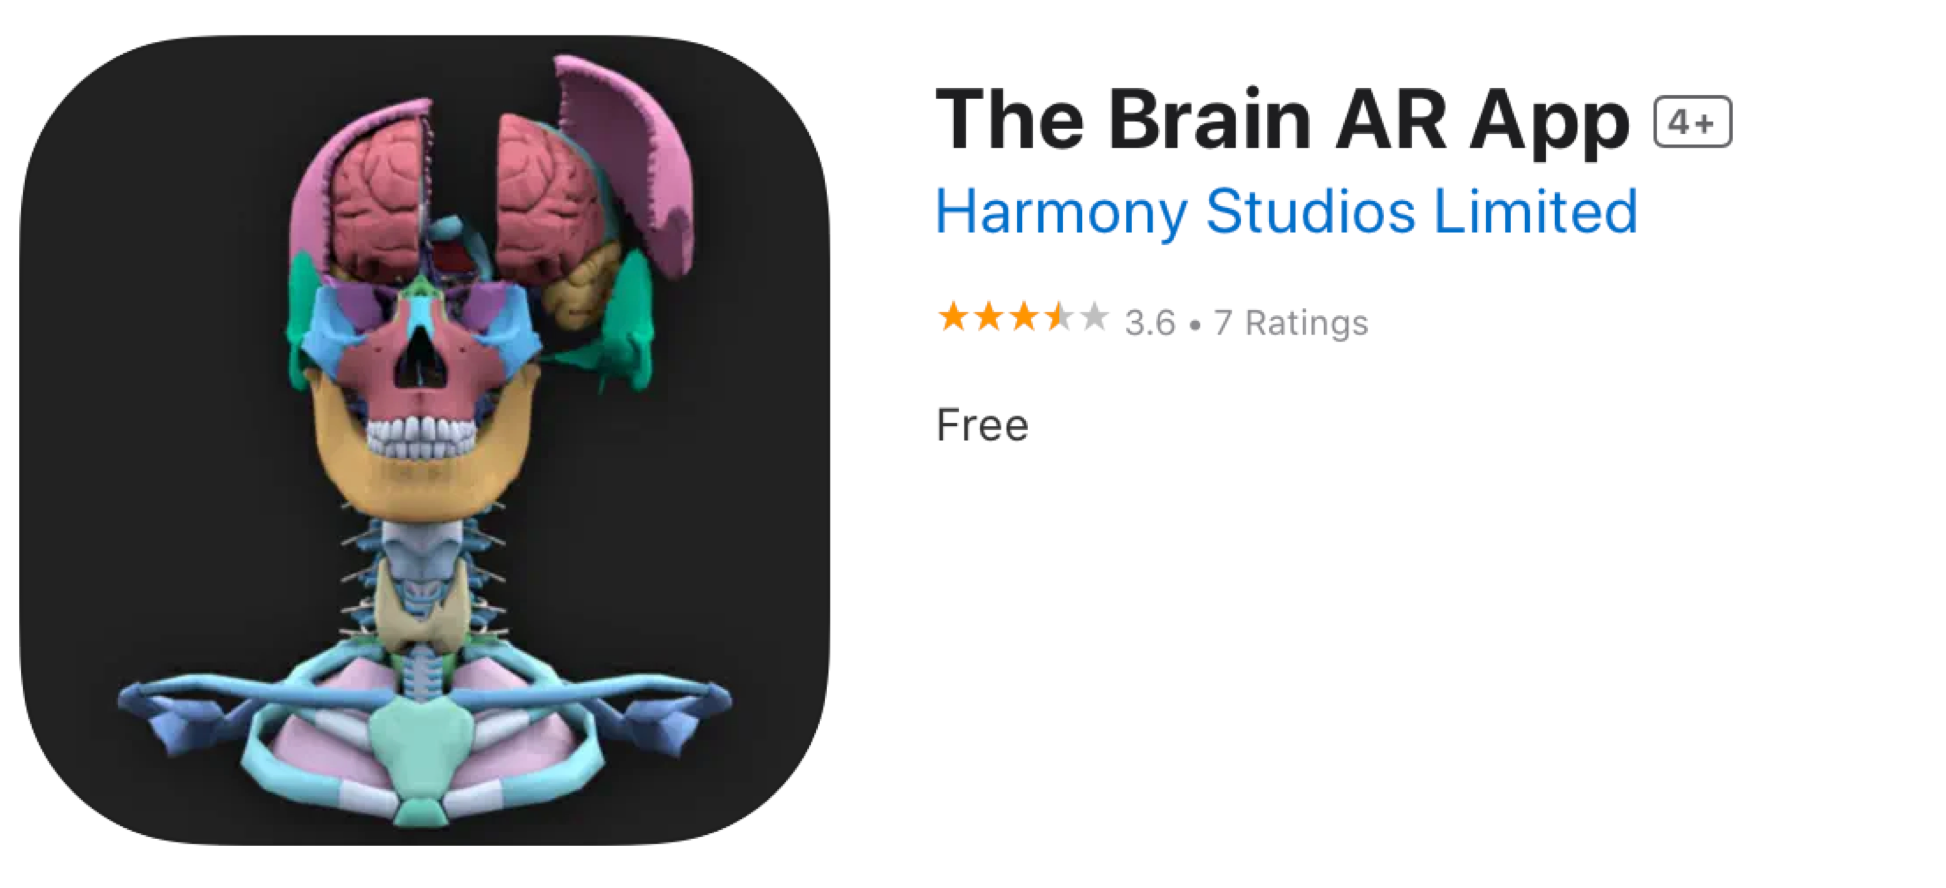 The Brain AR App